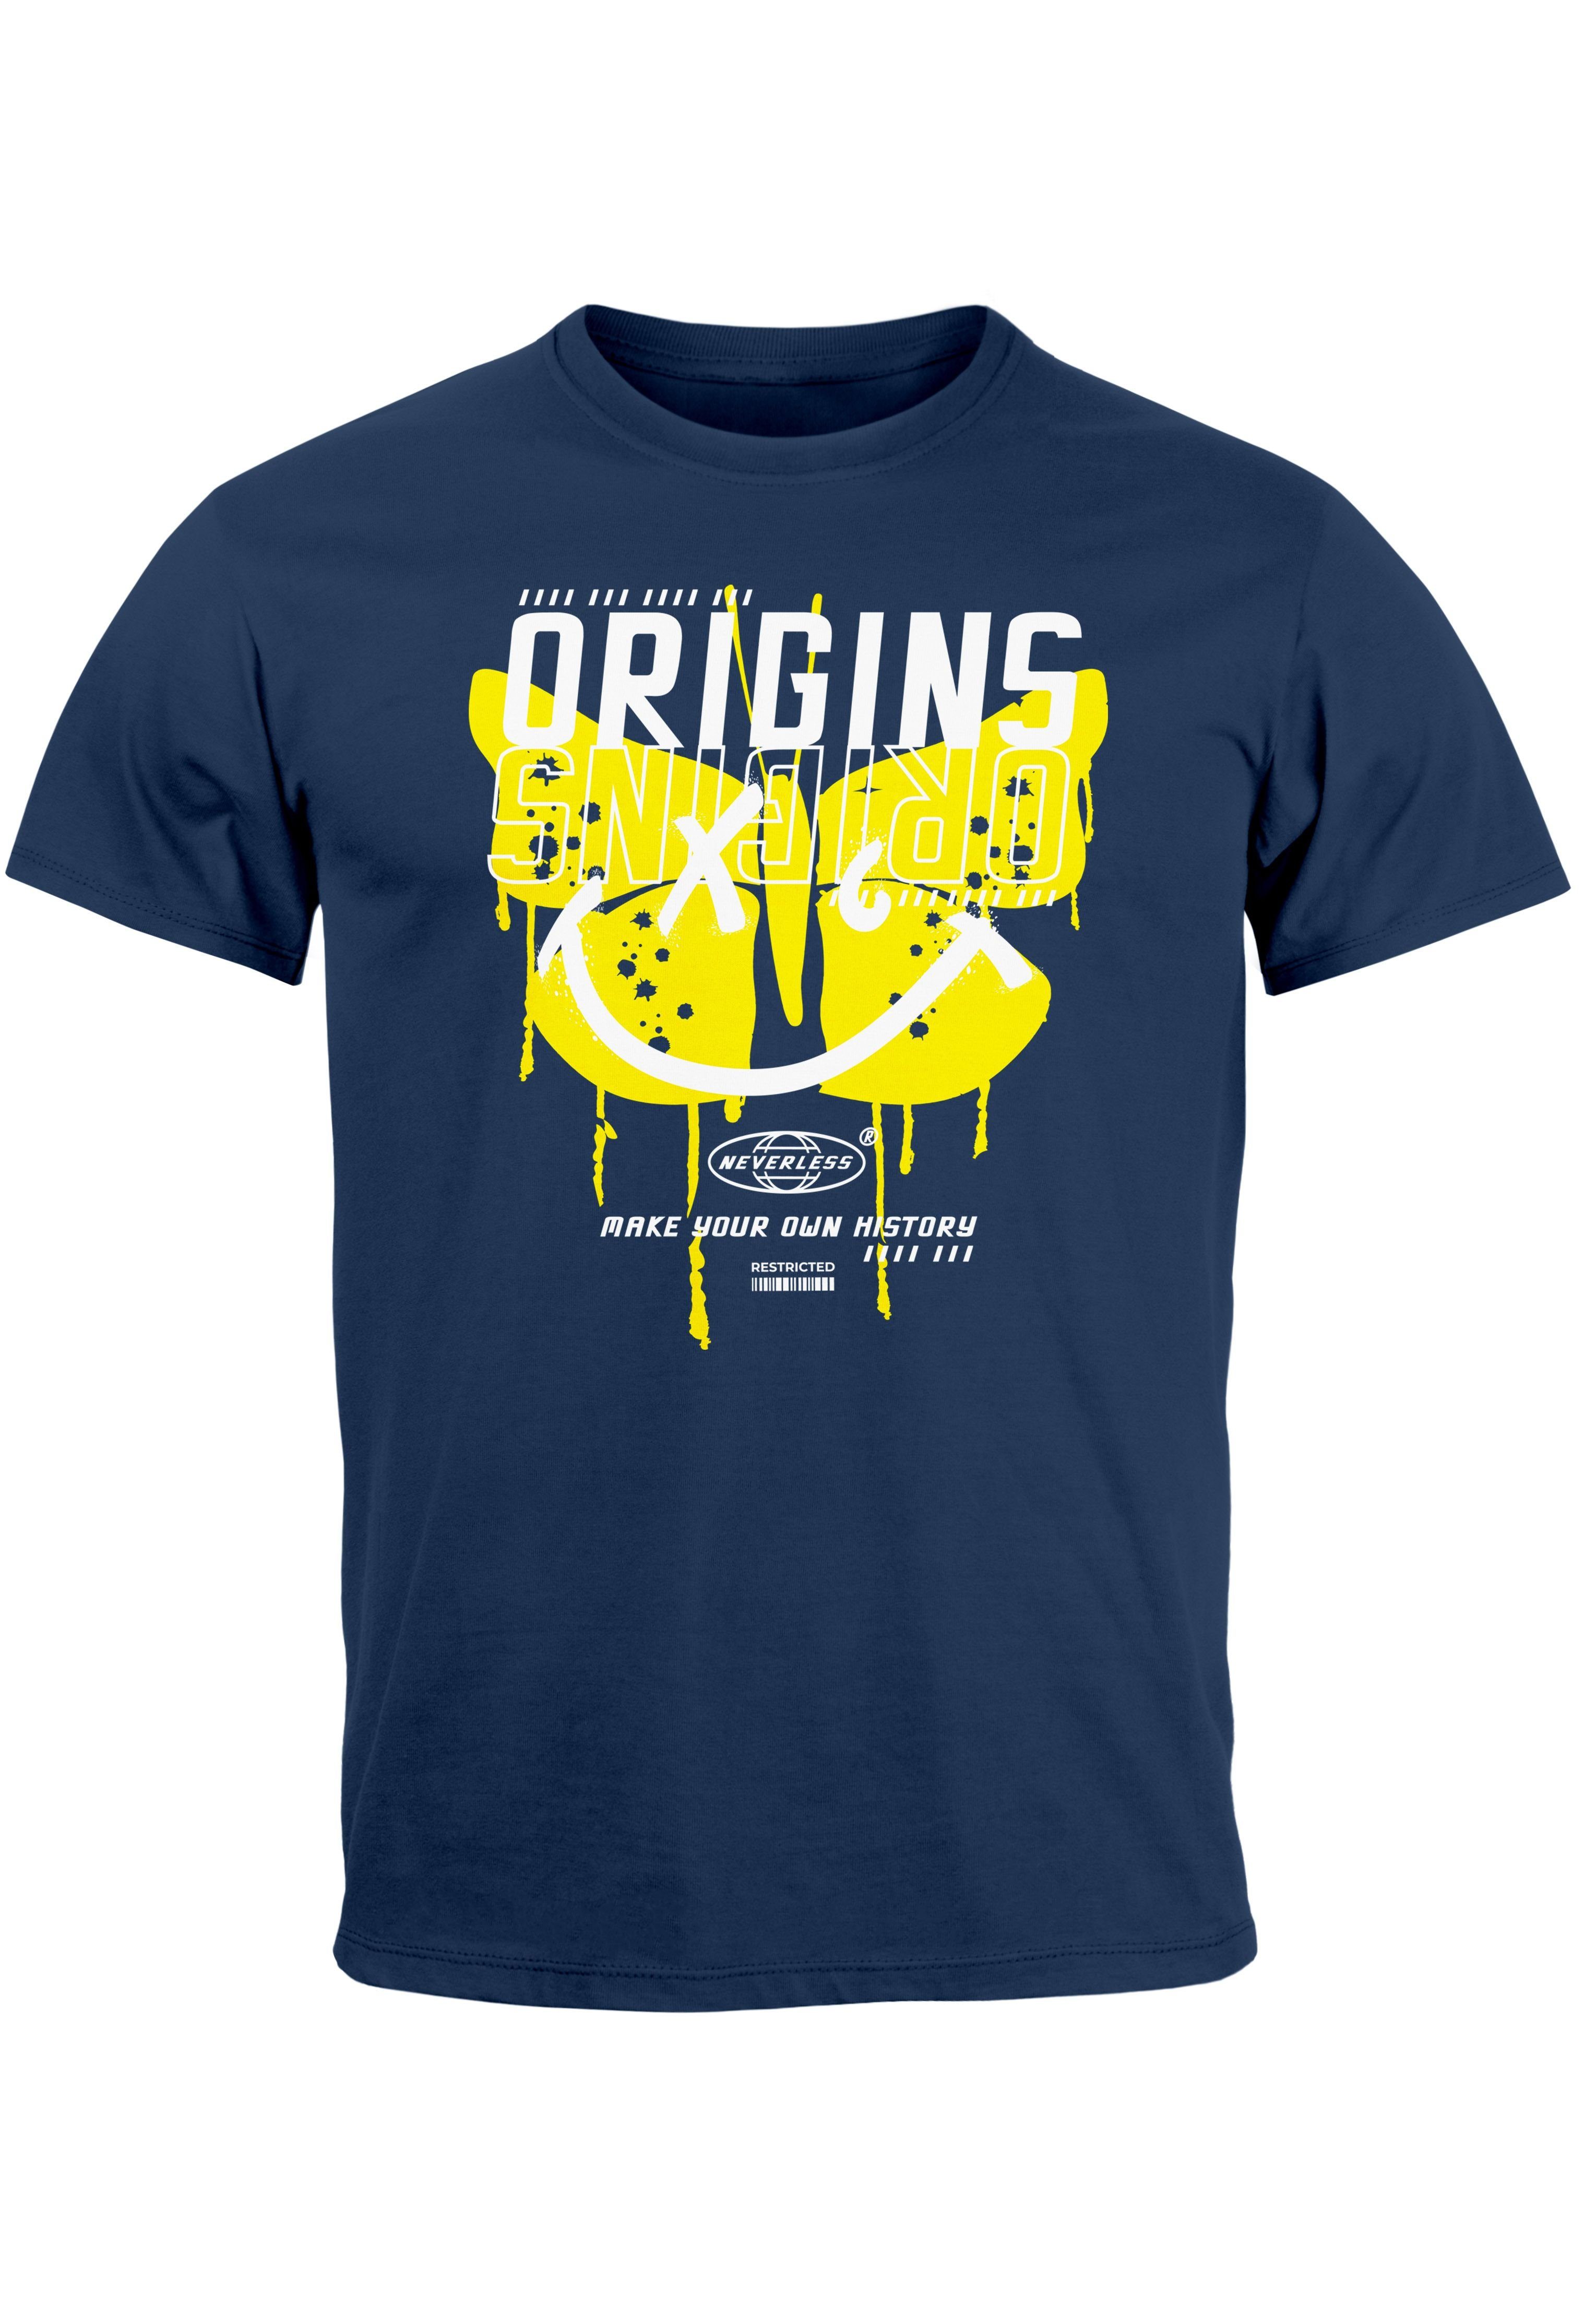 Neverless Print-Shirt Herren T-Shirt Aufdruck mit Butterfly History Schmetterling navy-gelb your Print own Make